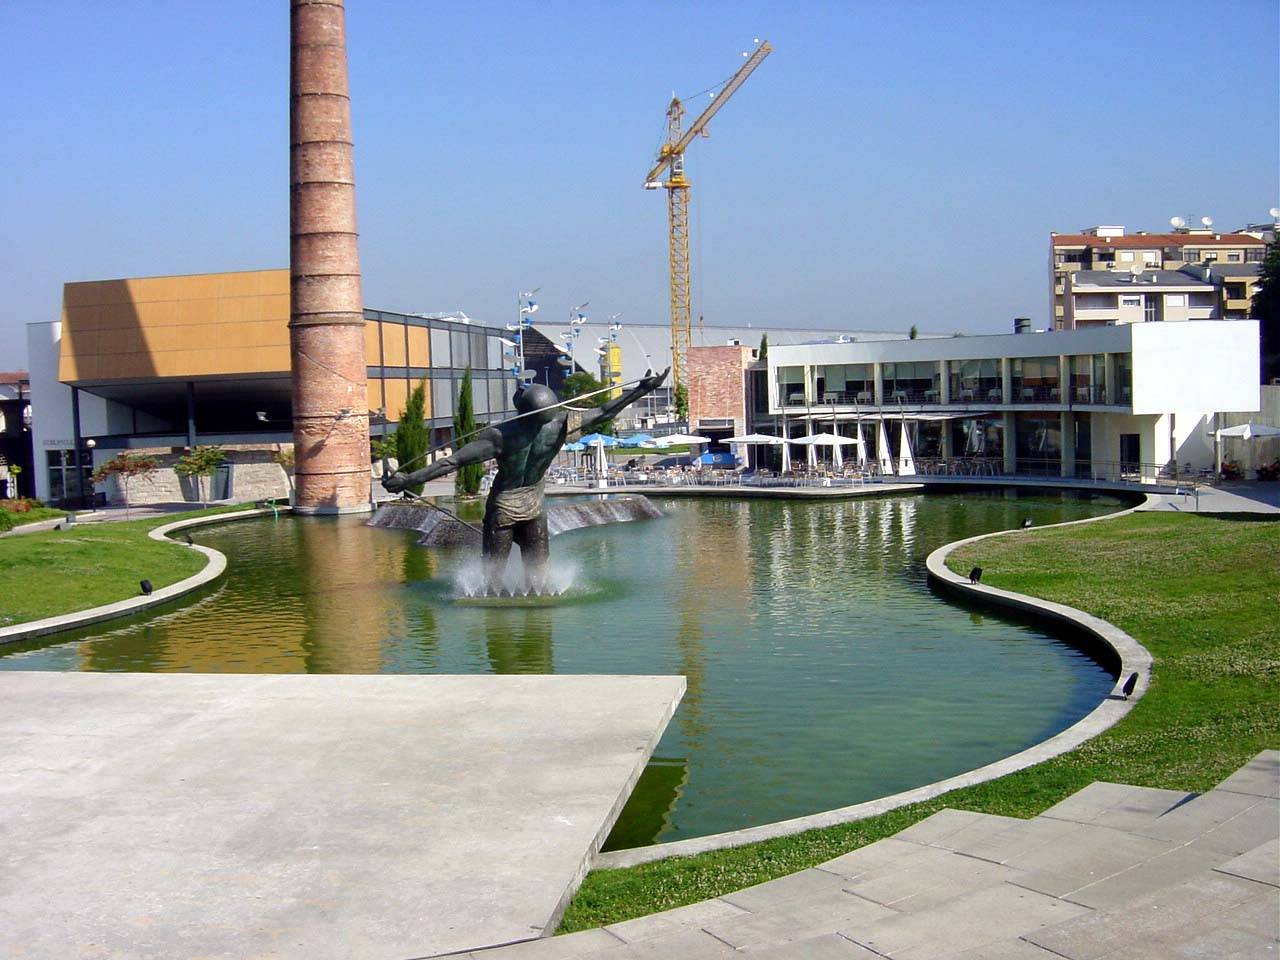 Parque Urbano Doutor Fernando de Melo / Parque Urbano de Ermesinde